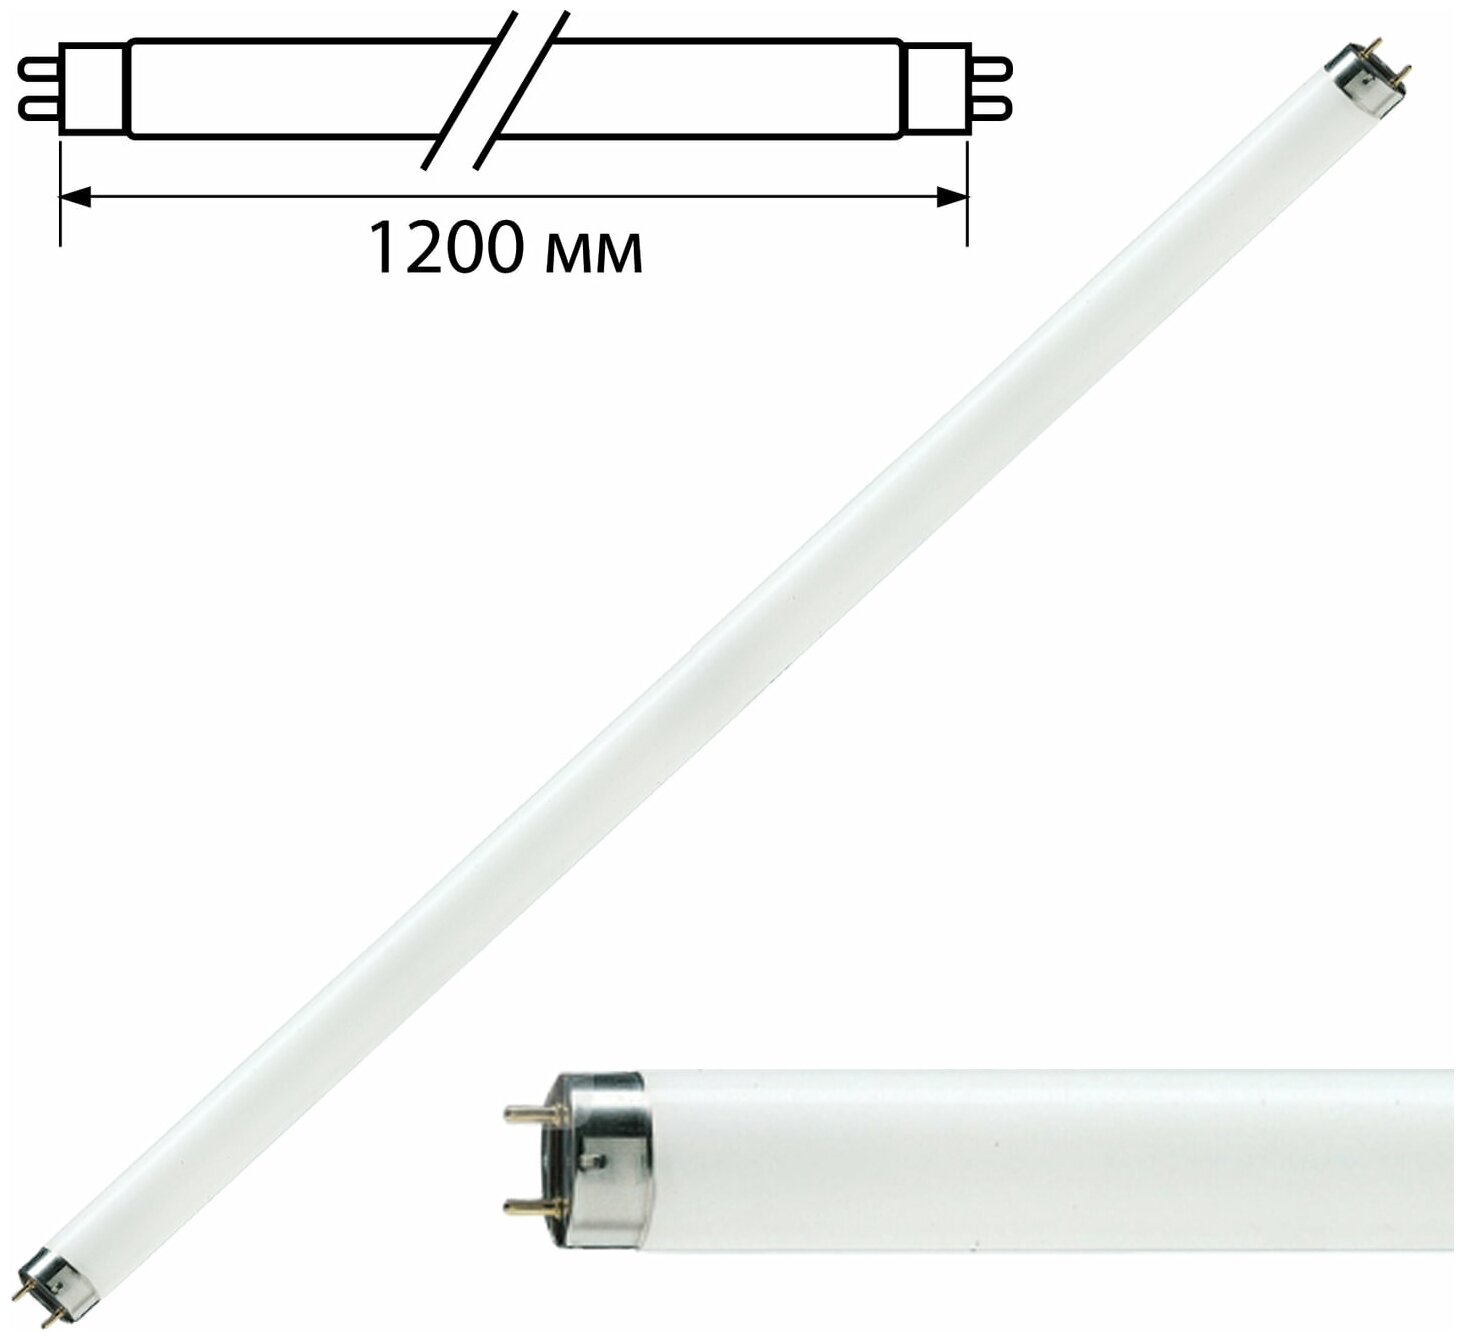 Комплект 5 шт. Лампа люминесцентная PHILIPS TL-D 36W/33-640, 36 Вт, цоколь G13, в виде трубки 120 см